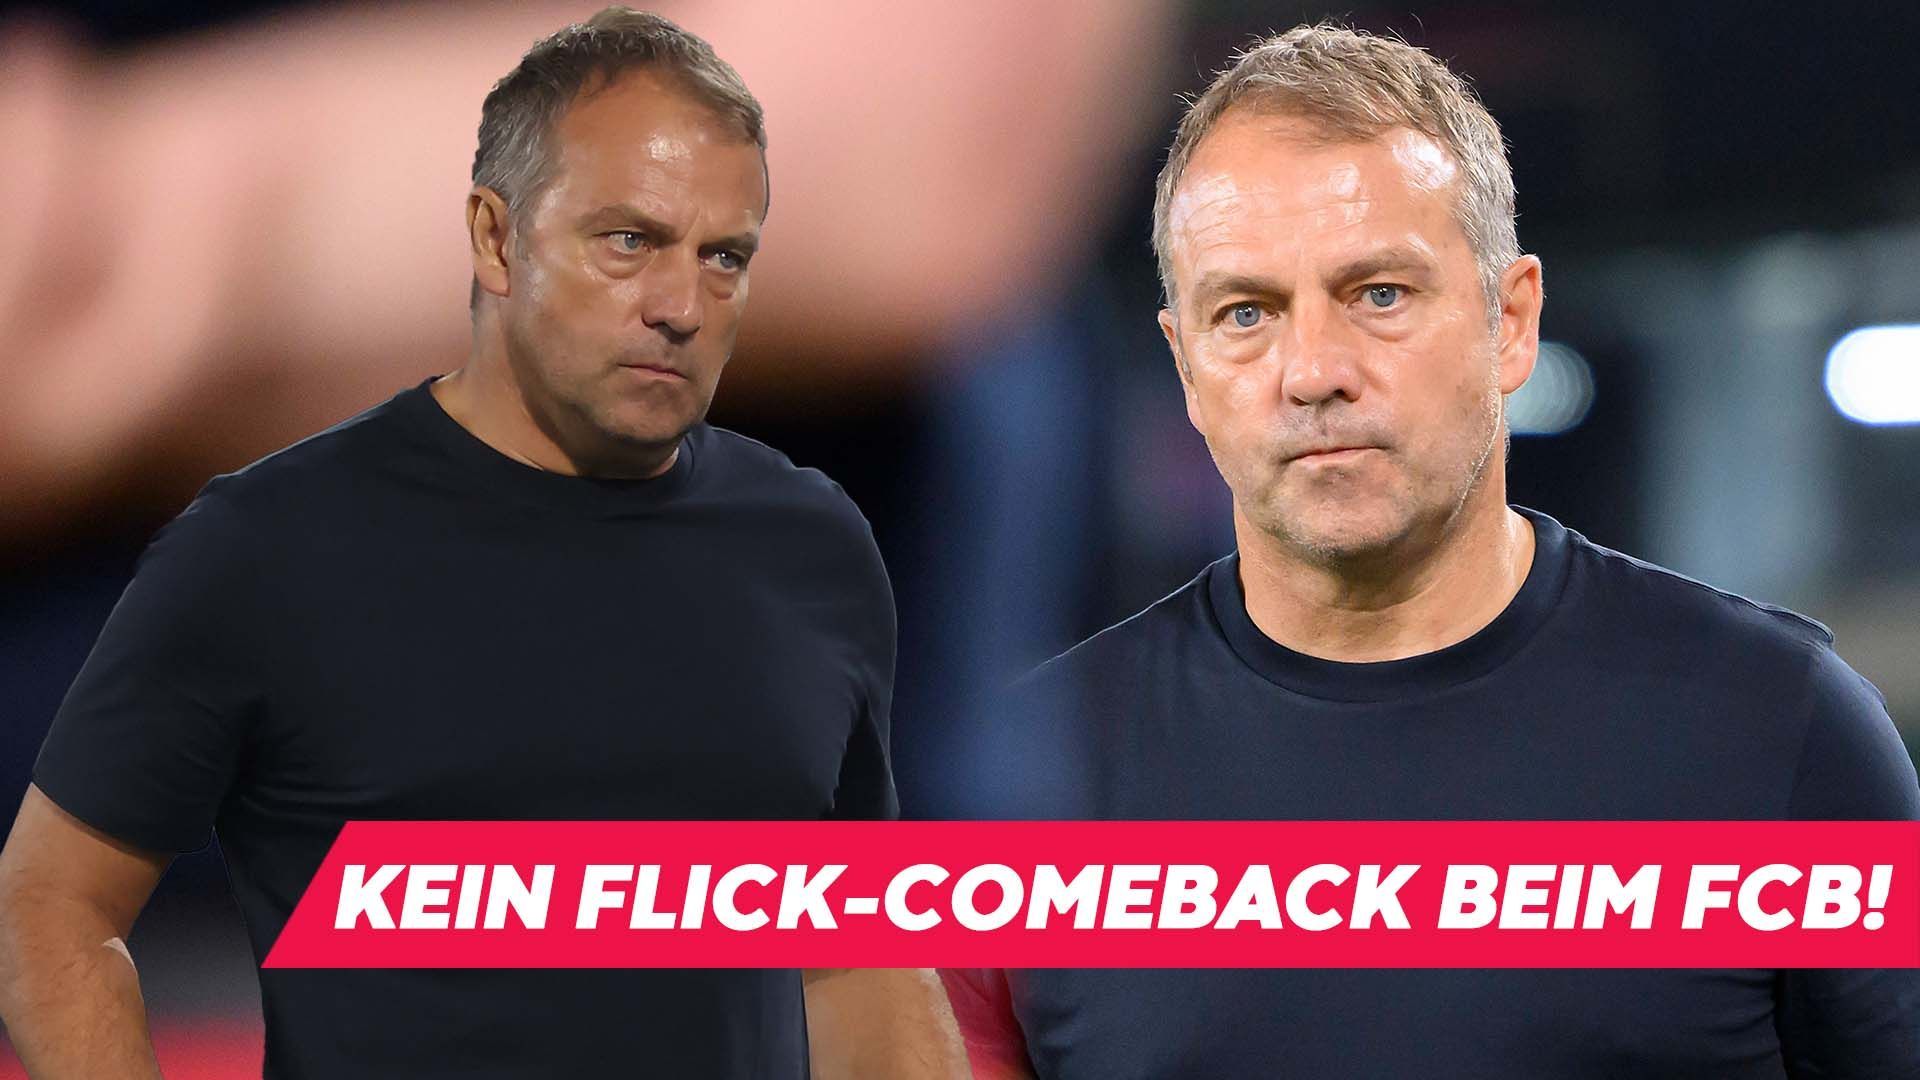 Flick-Comeback beim FC Bayern ist “fast vom Tisch”!